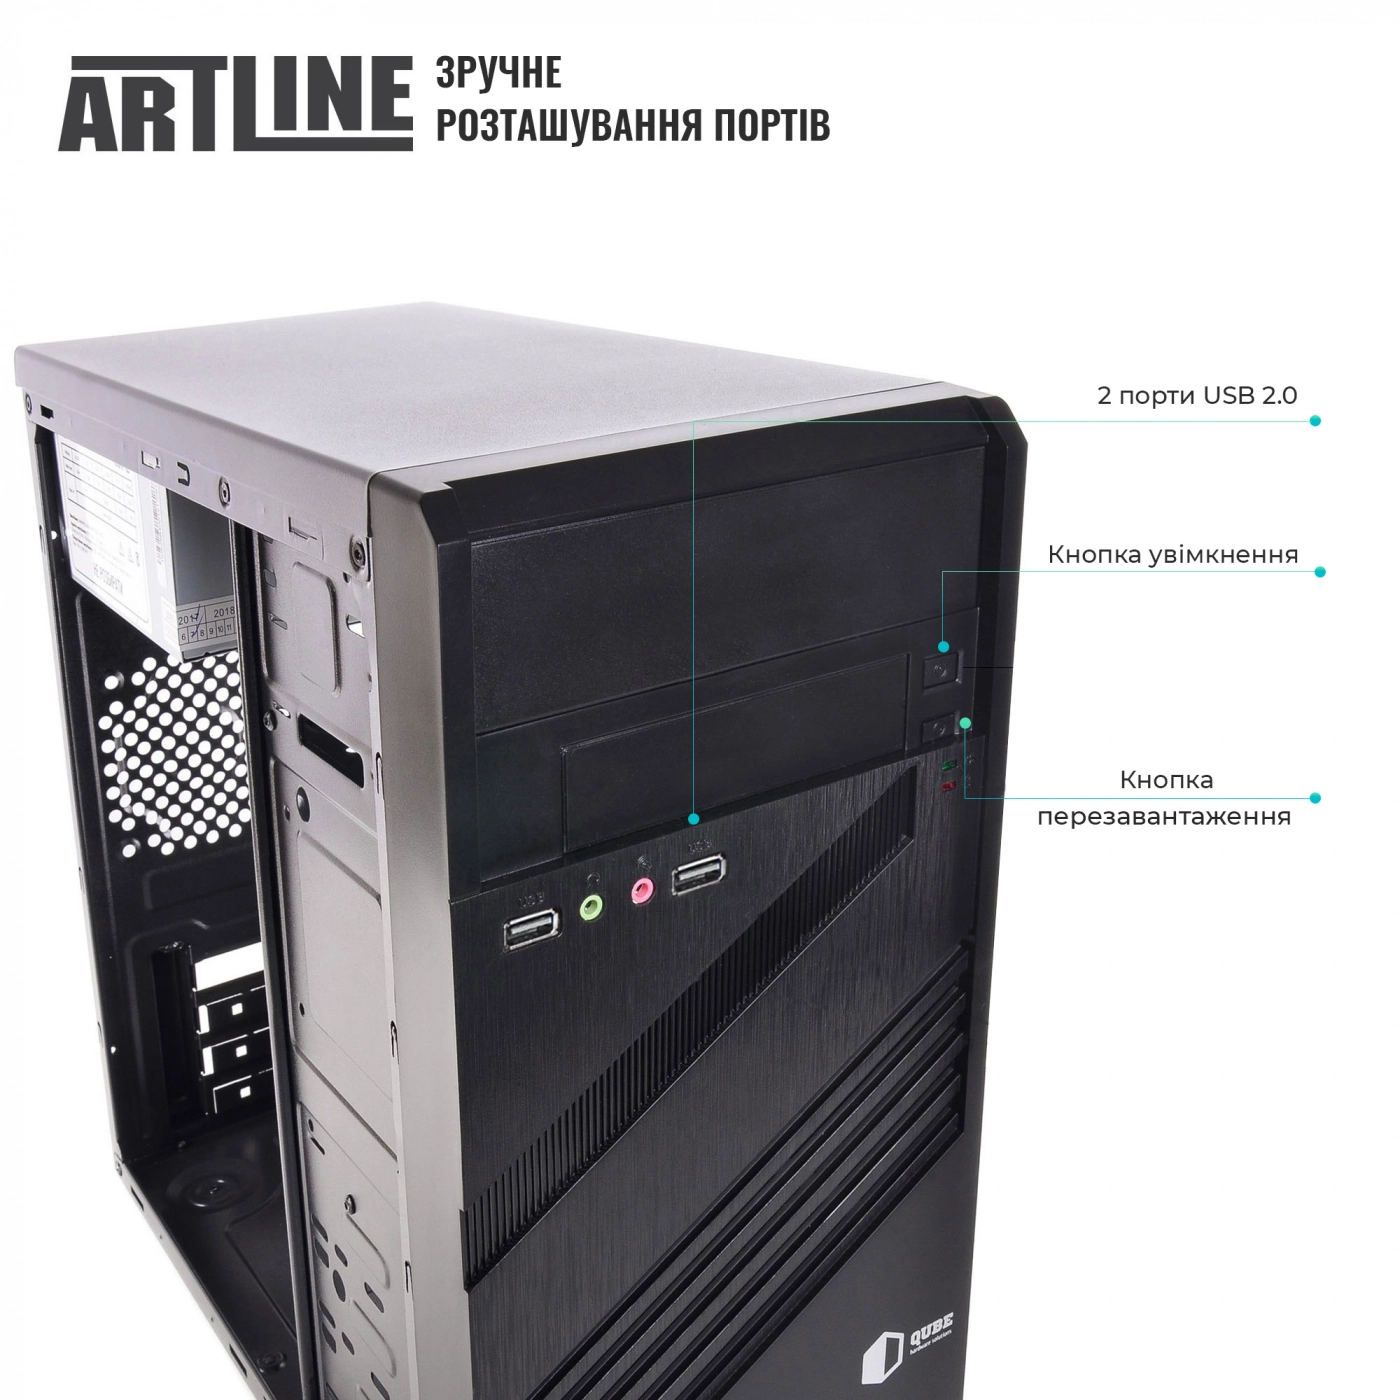 Купить Компьютер ARTLINE Business X21v03 - фото 3